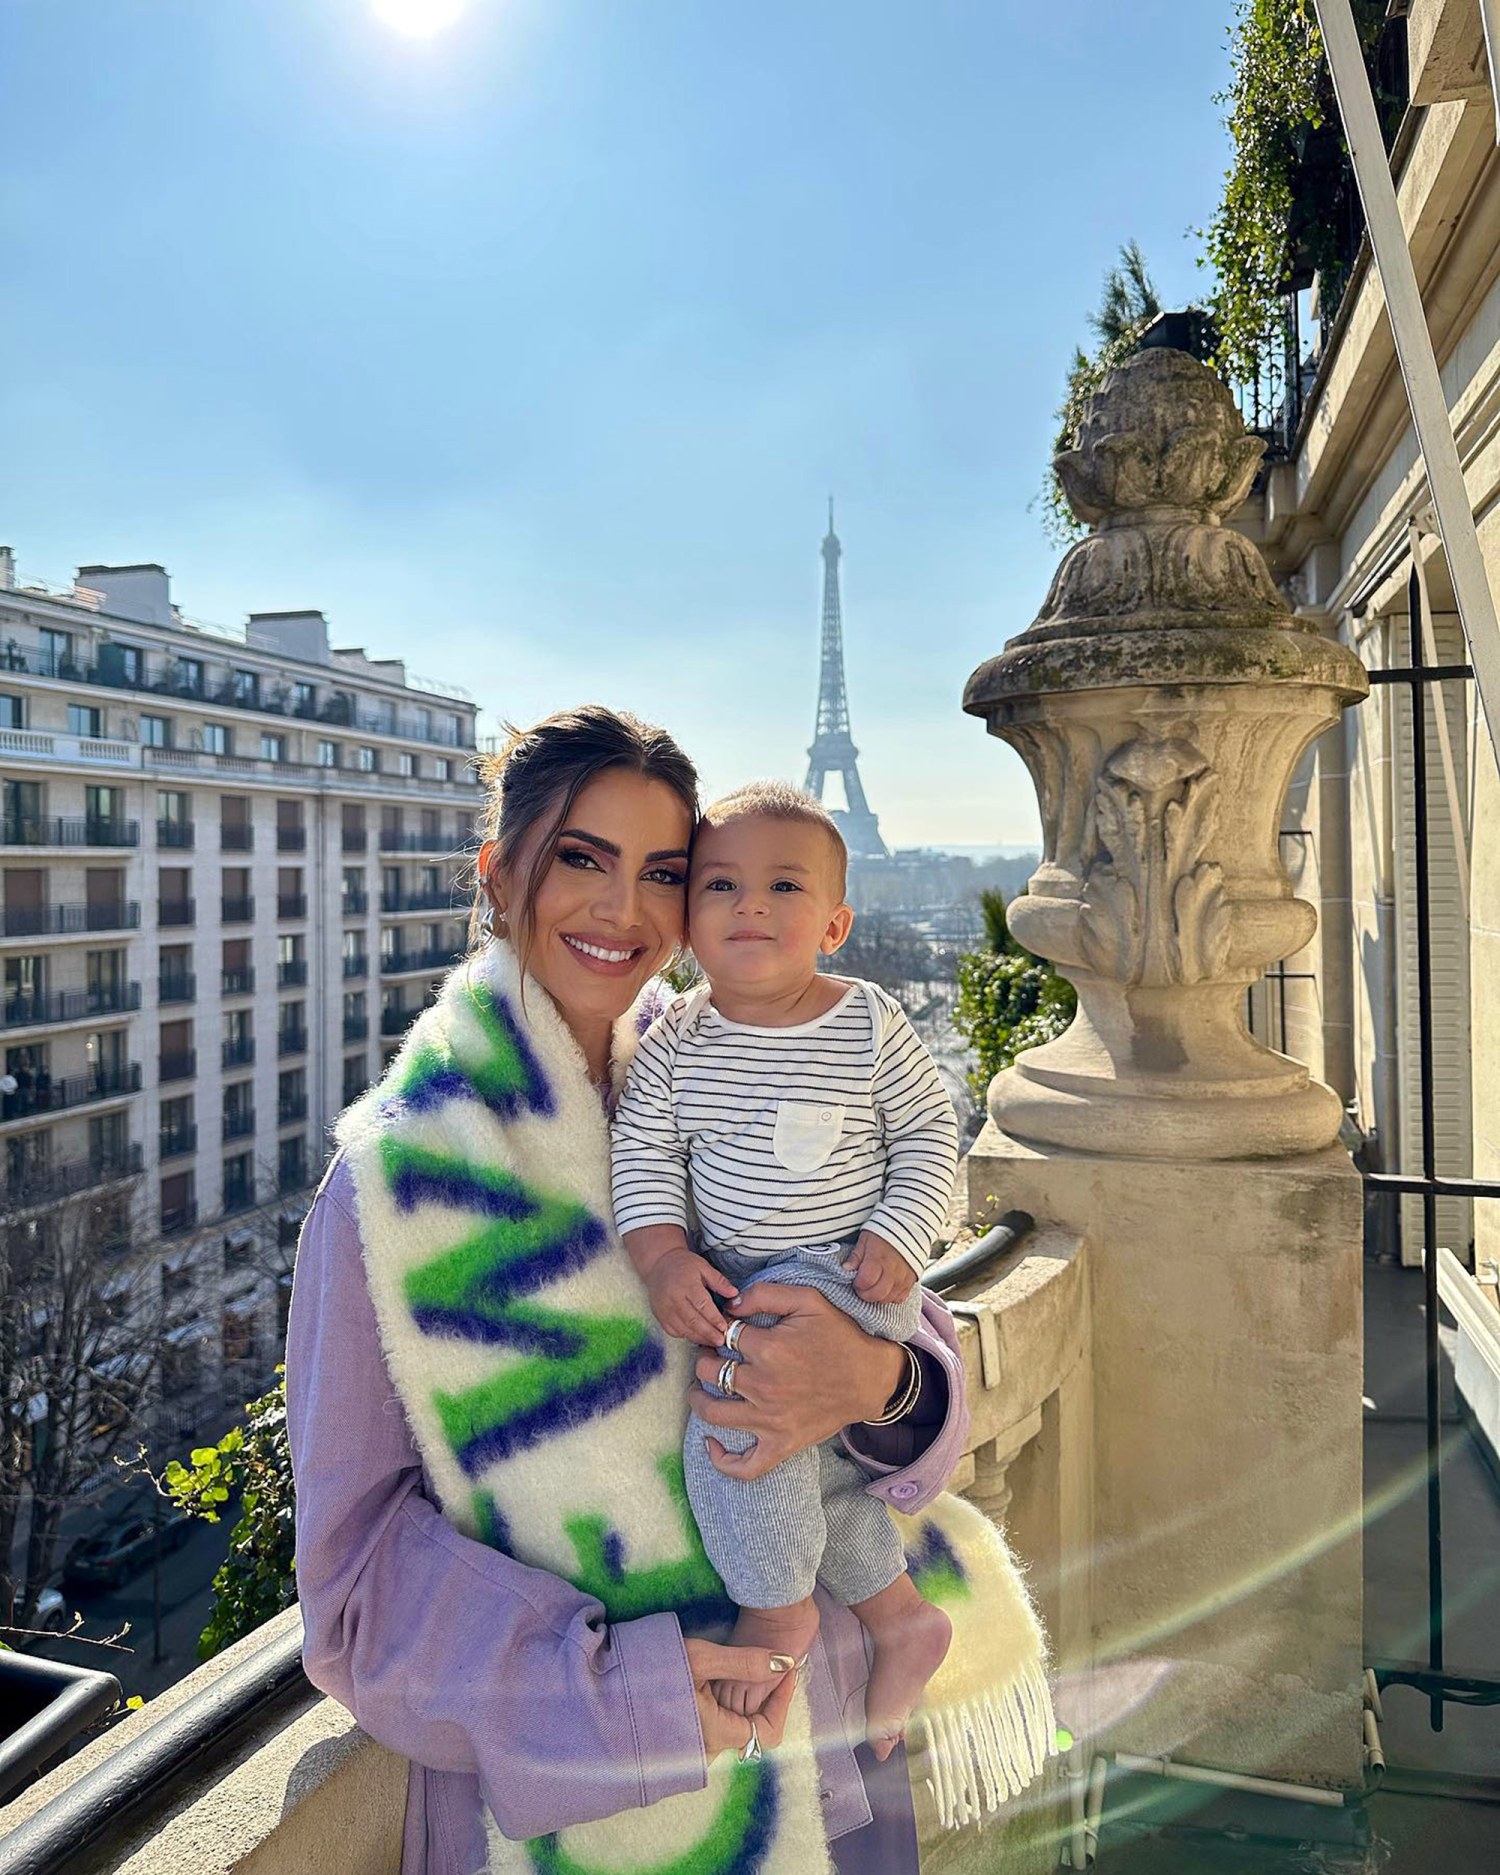 Influencer Camila Coelho is a Mom